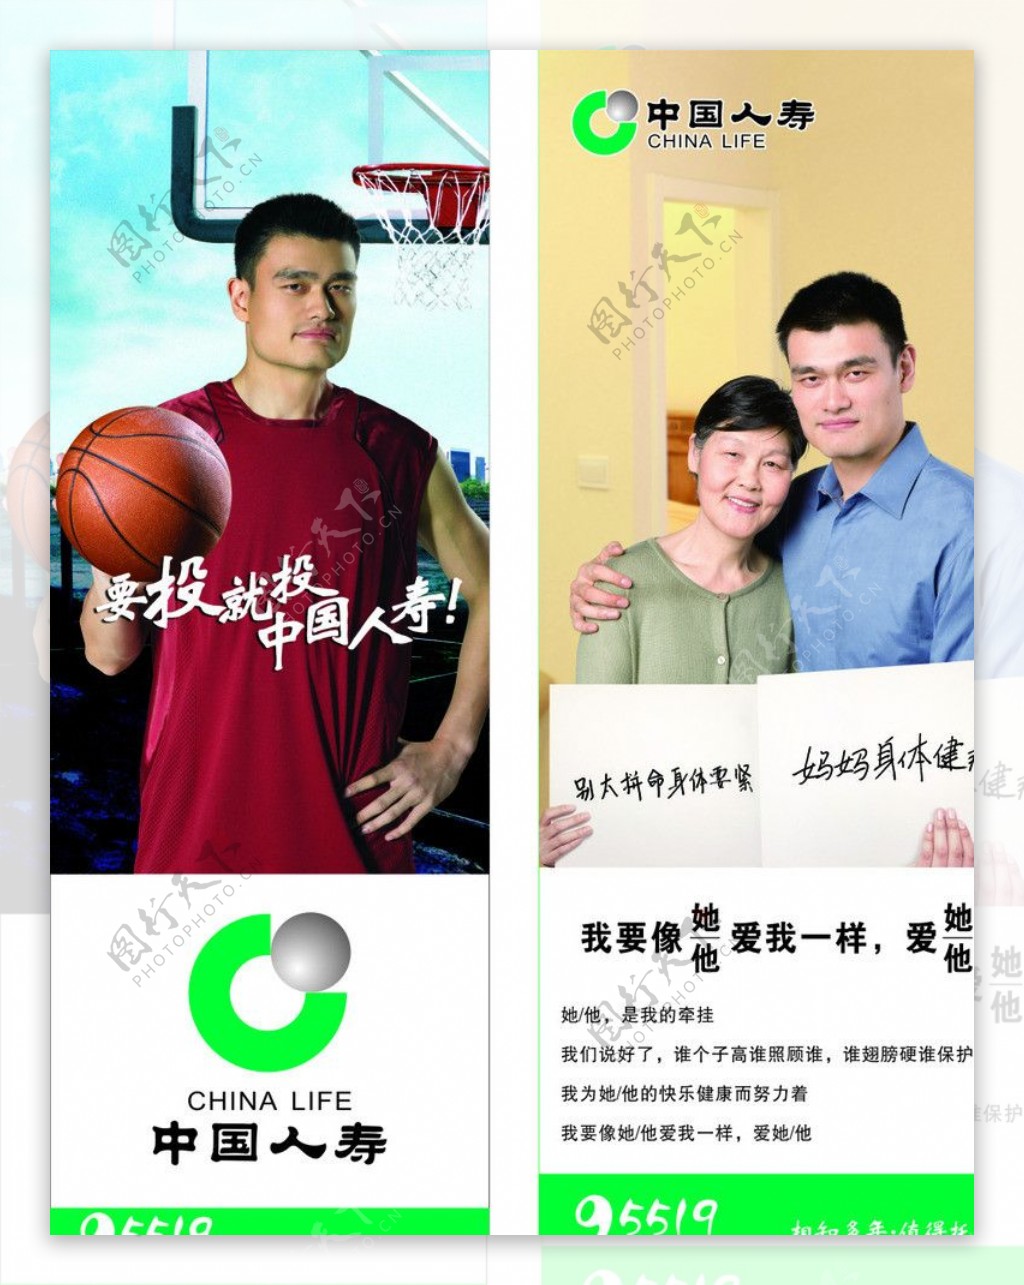 中国人寿墙体广告图片